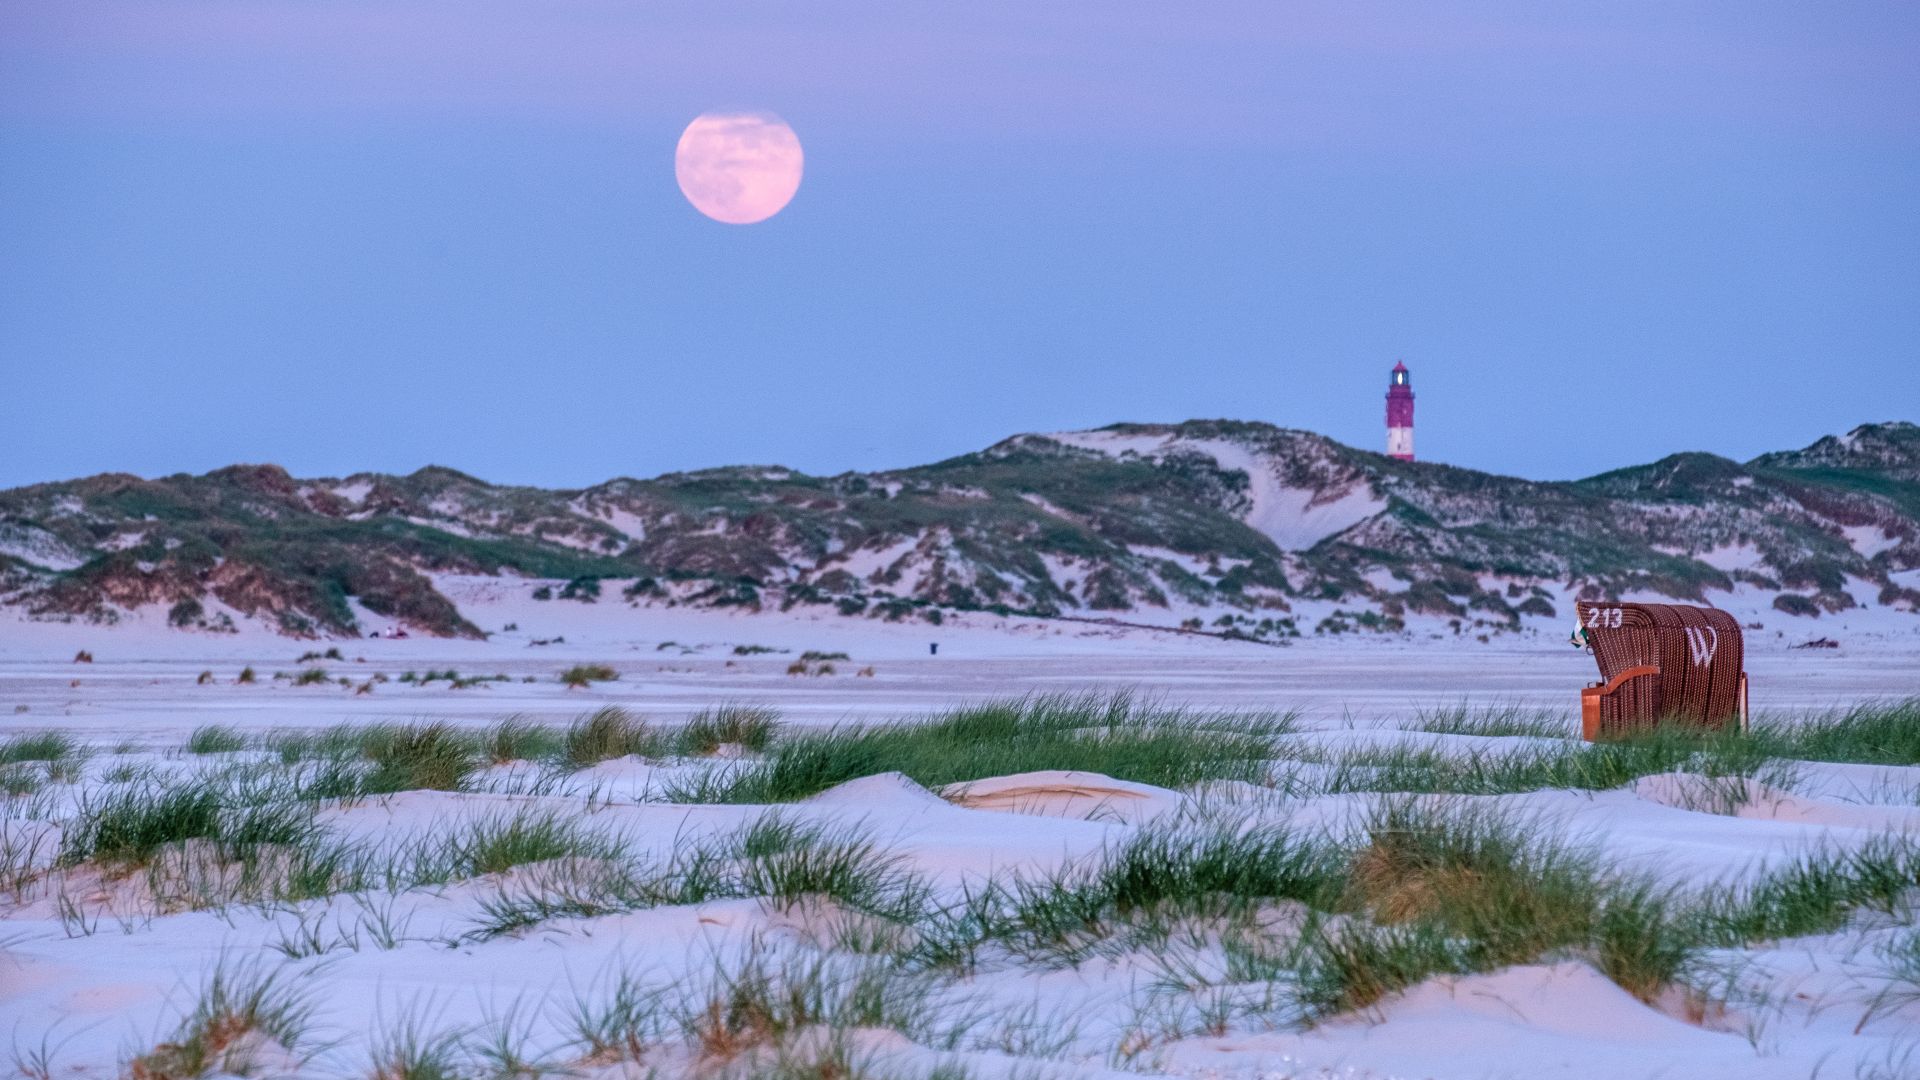 Amrum: full moon over the beach, light house, beach chair